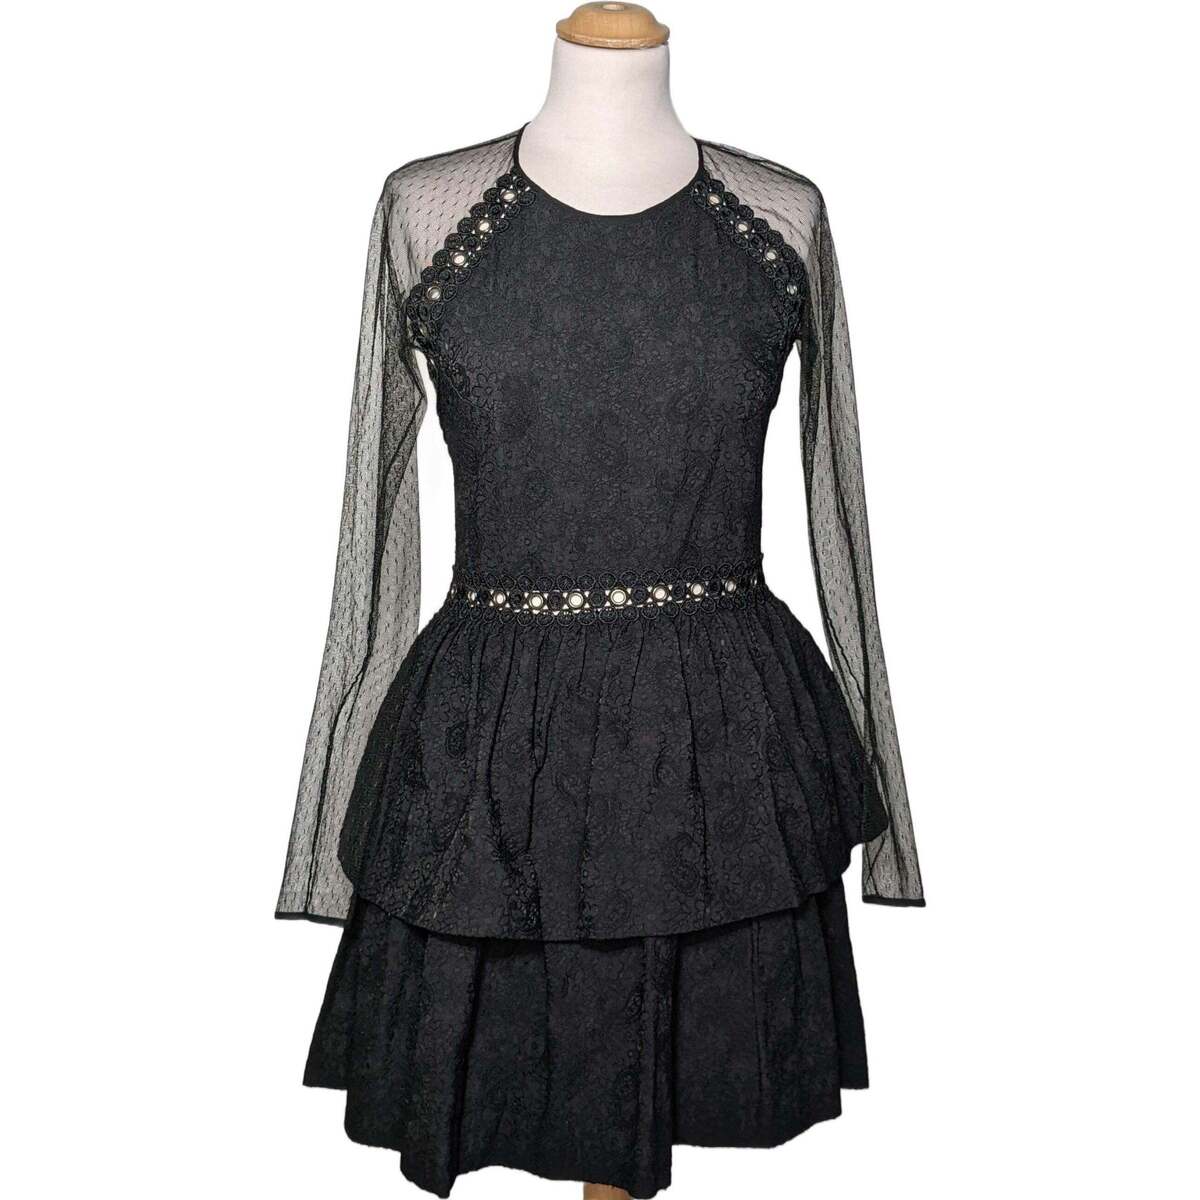 Vêtements Femme Les musts de janvier robe courte  38 - T2 - M Noir Noir